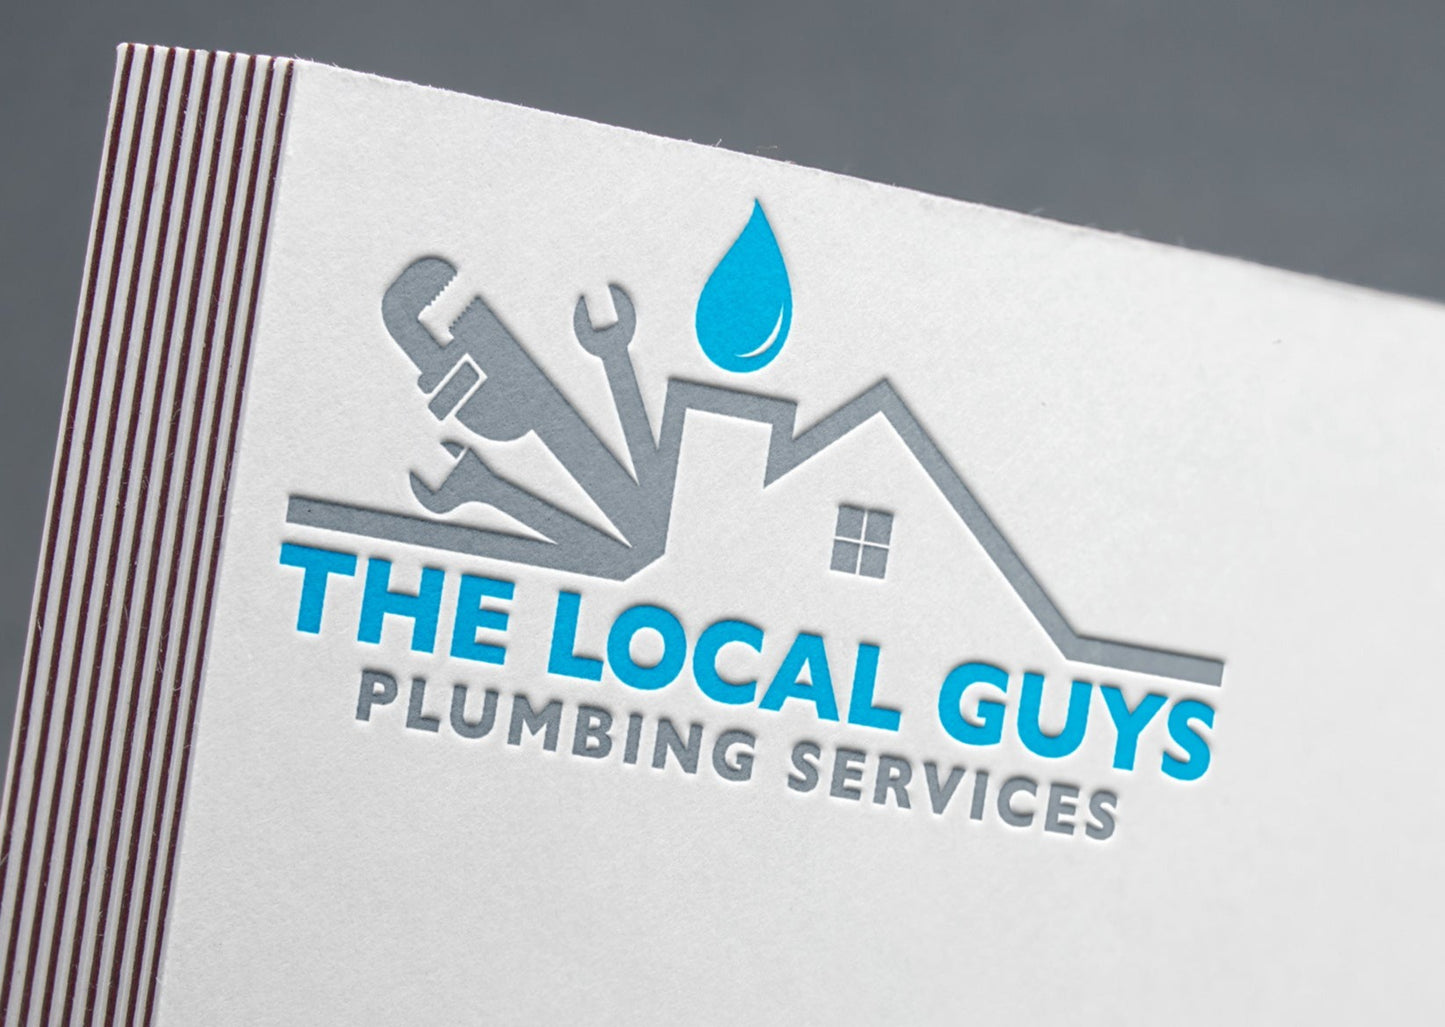 Logo Design - Plumber Logo | Plumbing Services | Plumbing Business | Handyman Logo